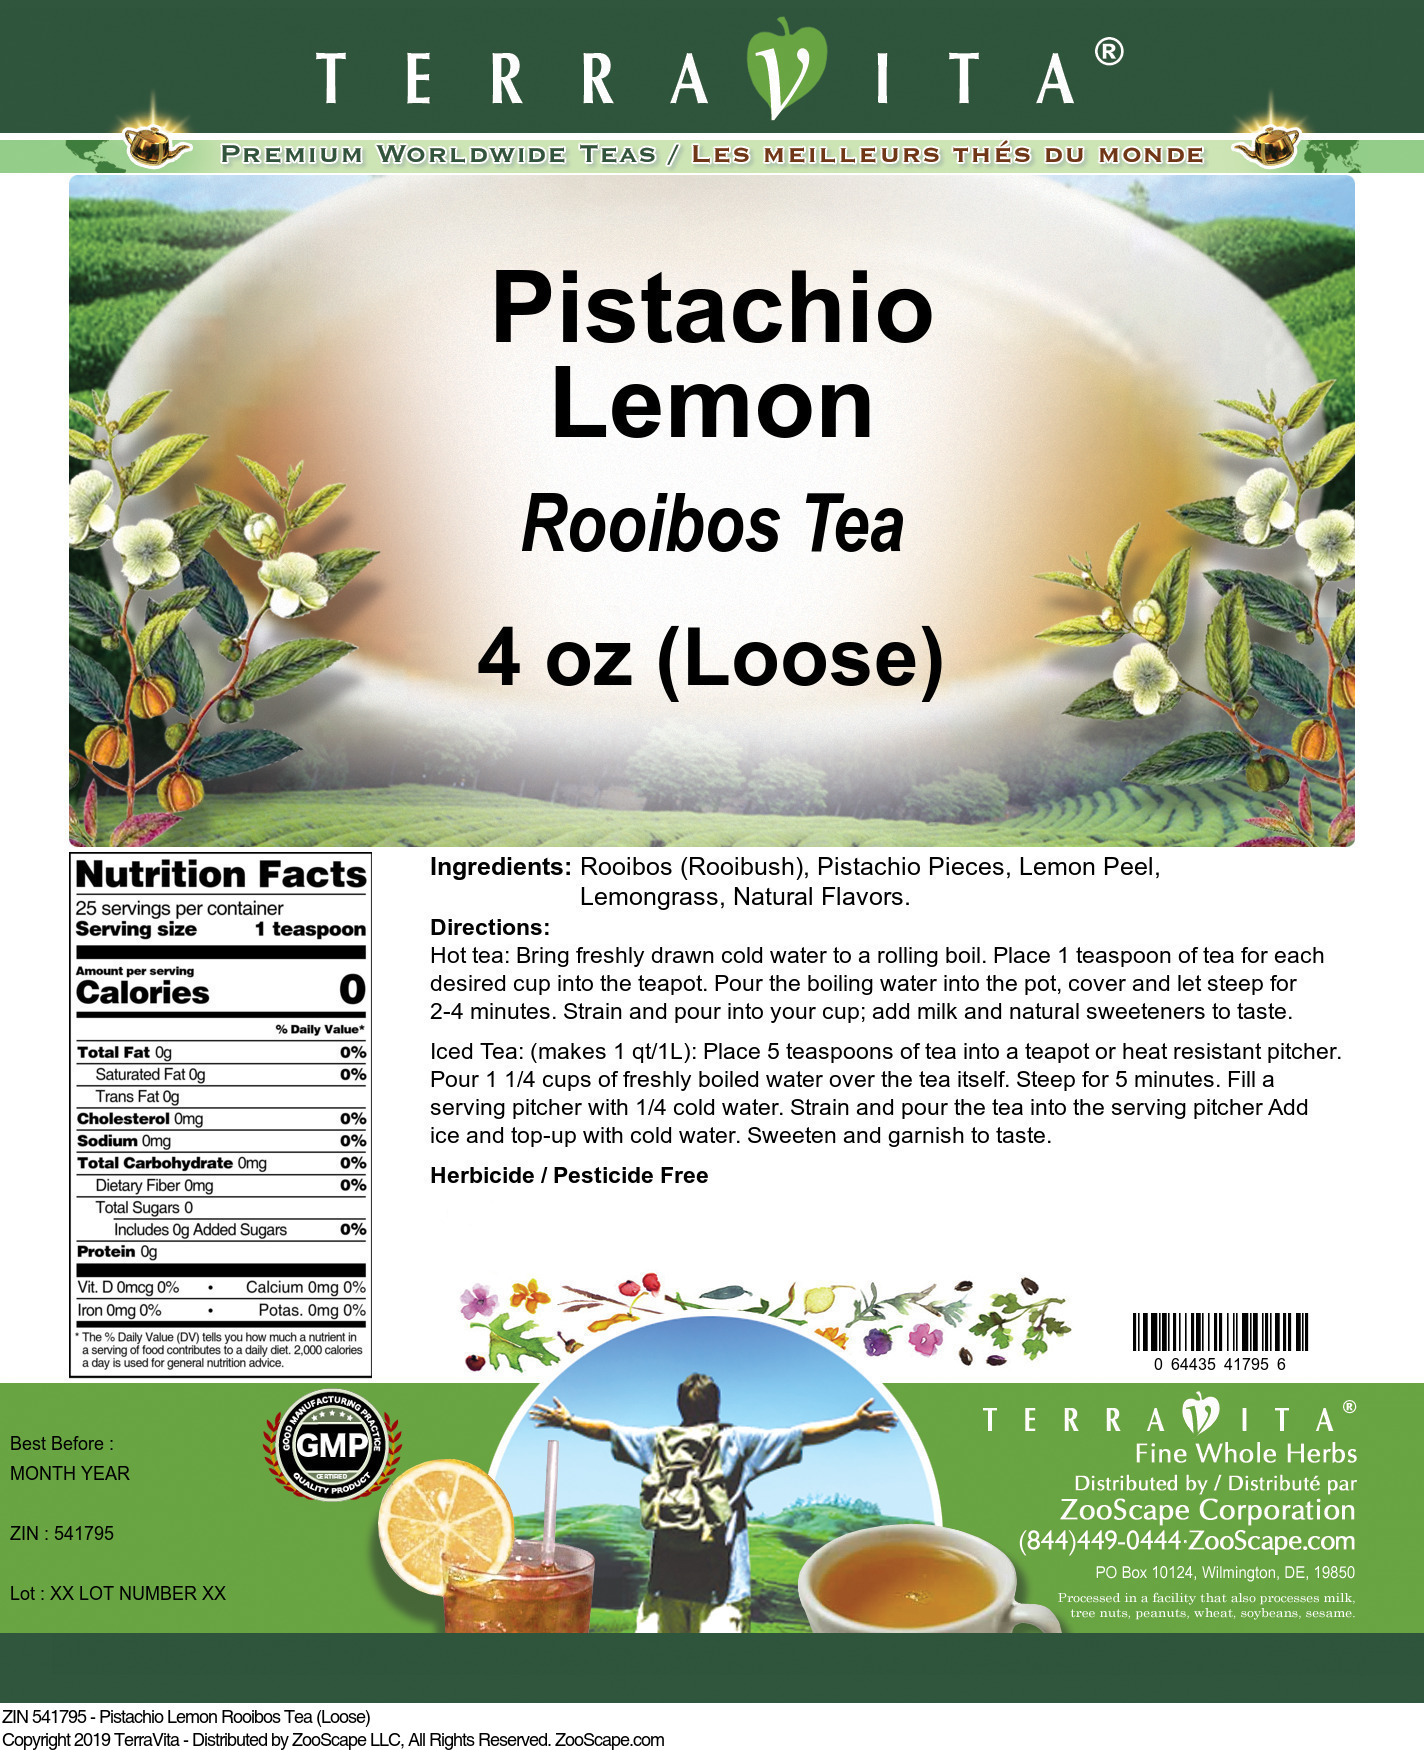 Pistachio Lemon Rooibos Tea (Loose) - Label